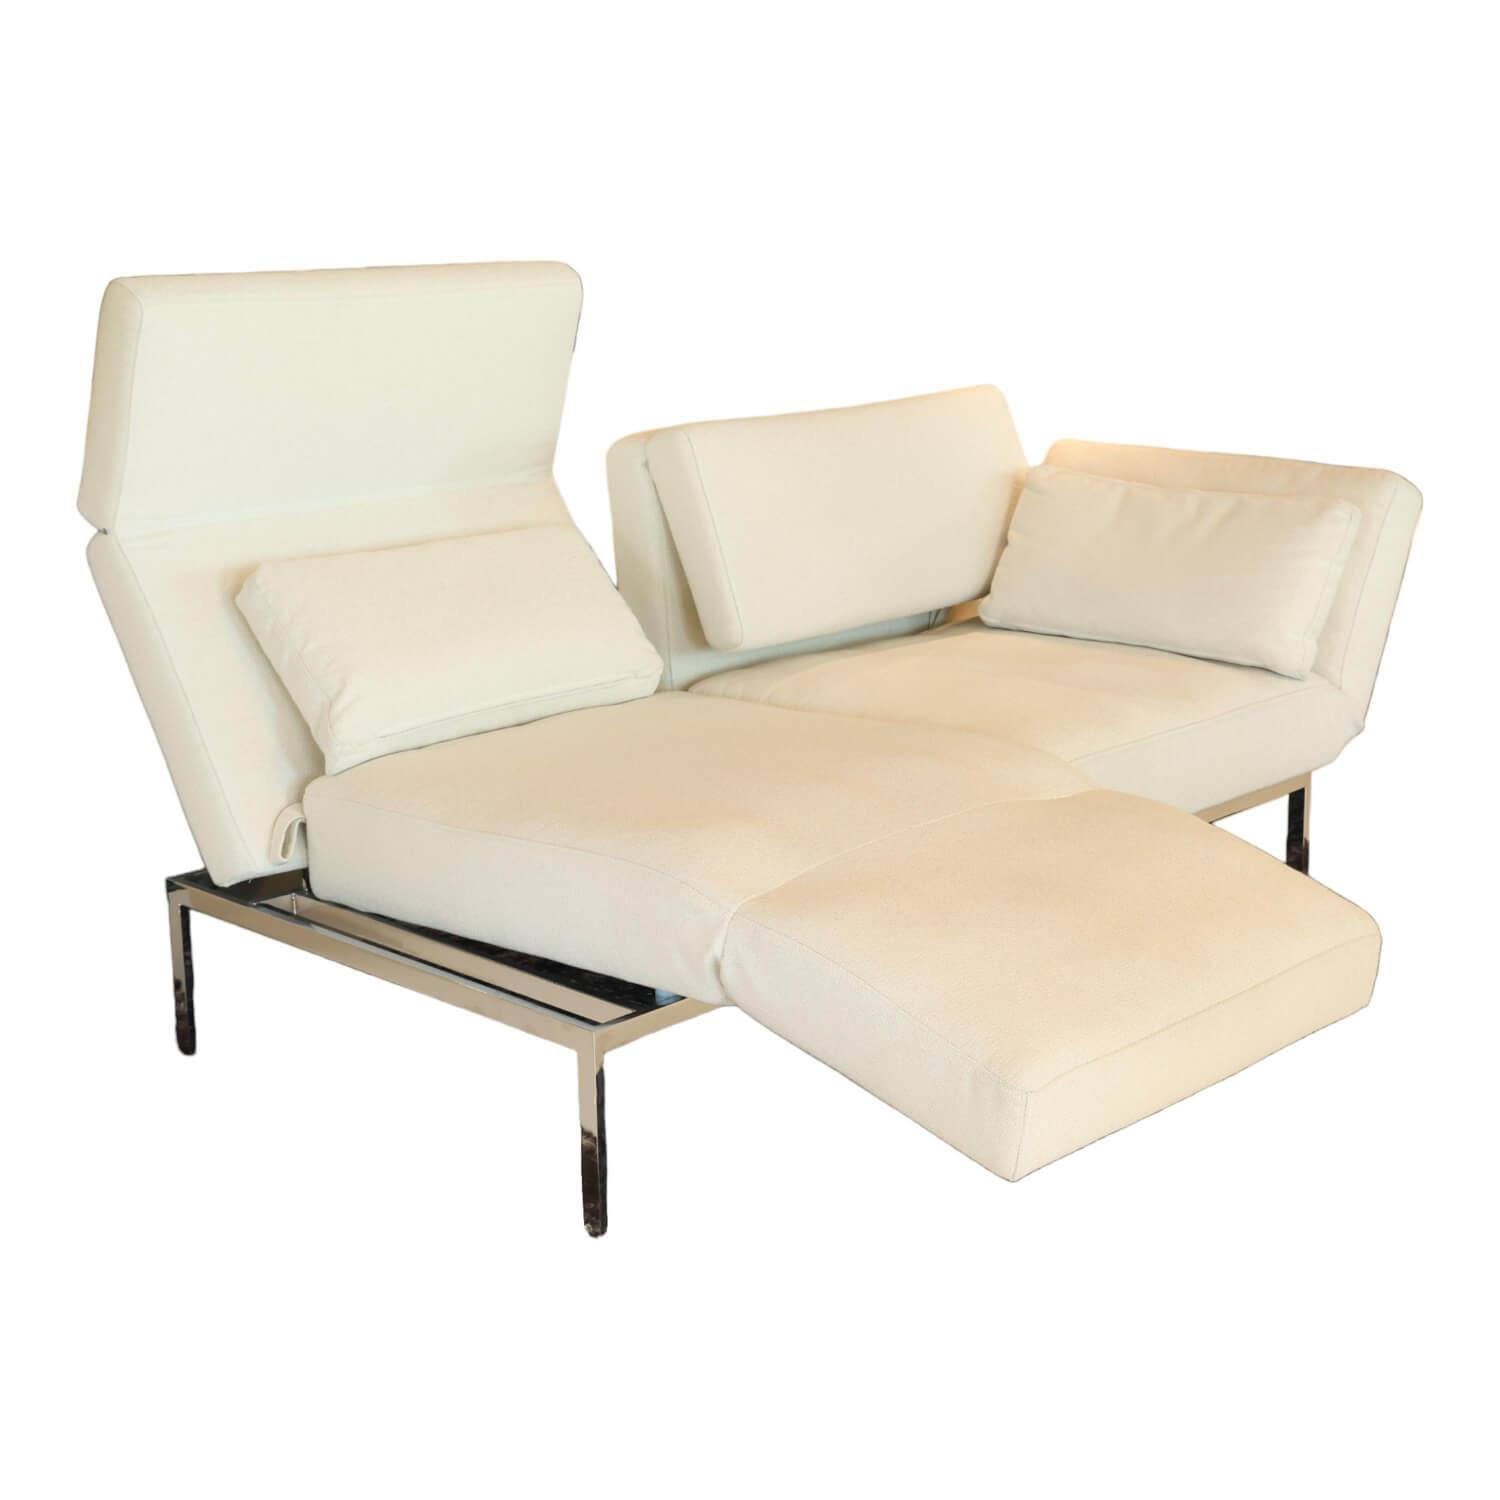 Sofa Roro Soft Bezug 3677 Farbe 40 Creme Mit Drehsitz Fuß Metalluntergestell Verchromt Glänzend